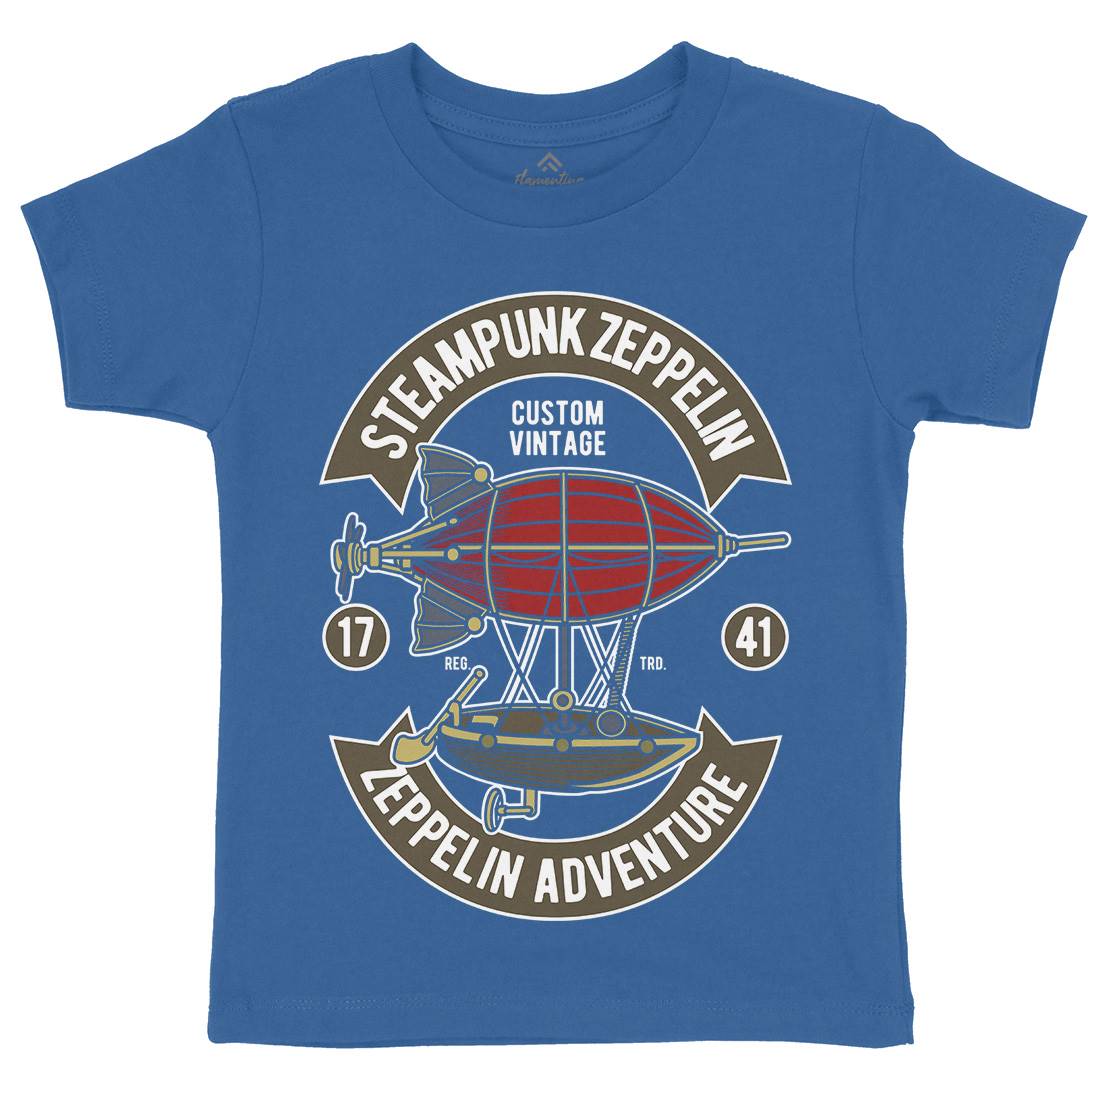 Steampunk Zeppelin Kids Crew Neck T-Shirt Vehicles D584